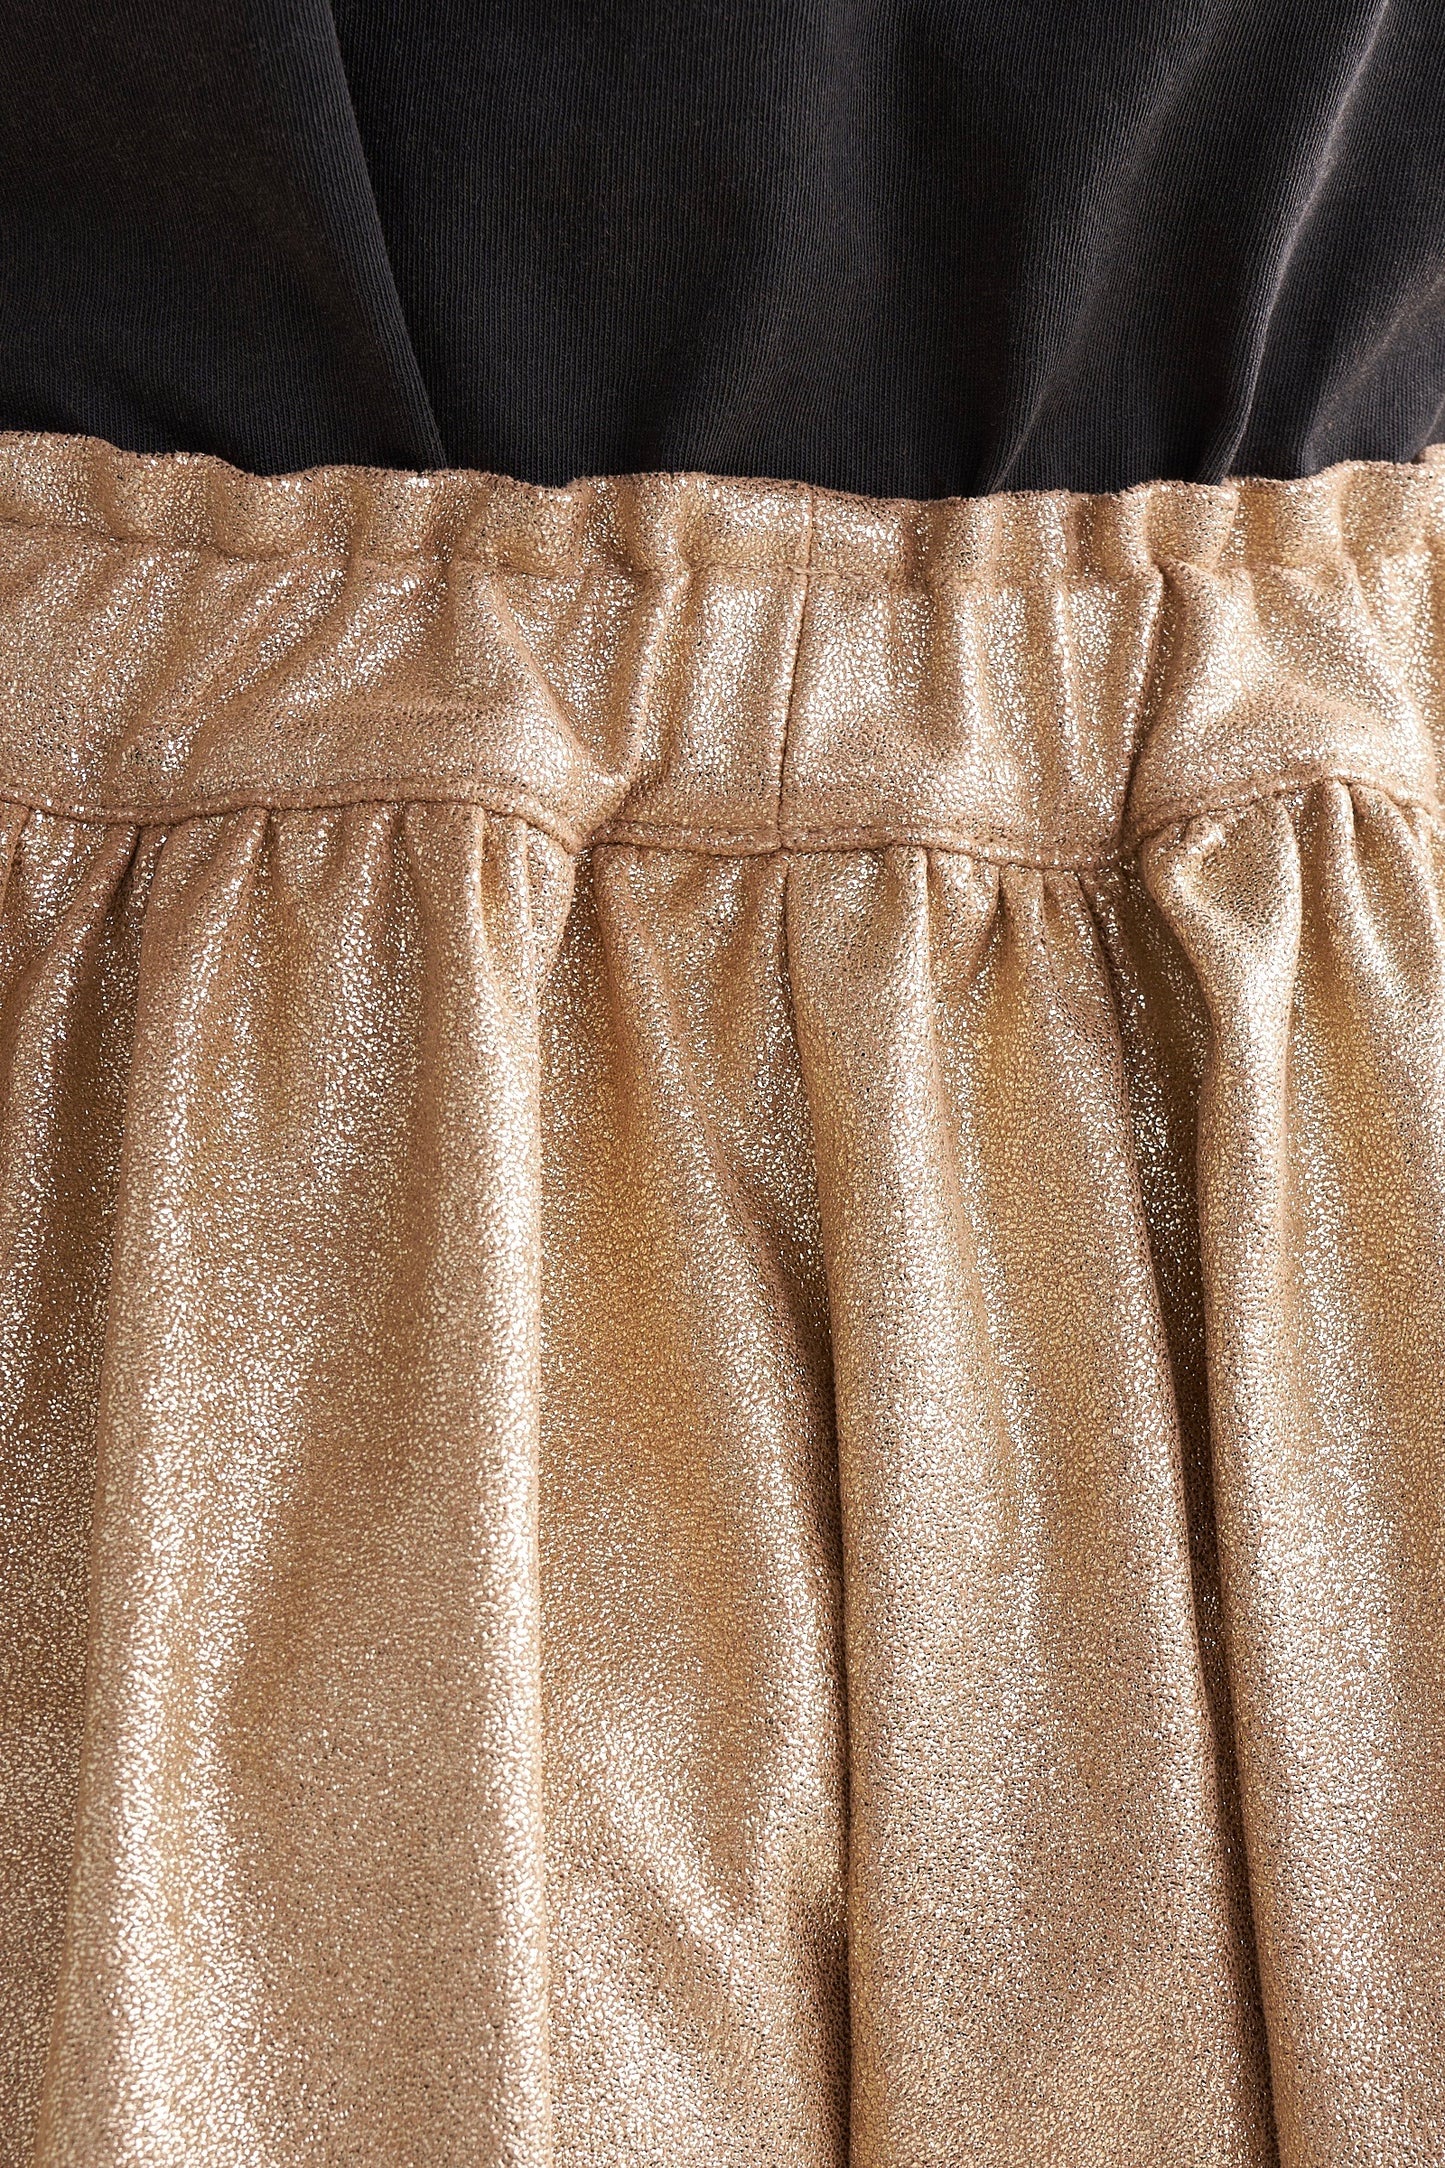 Bellerose - Austral Shorts: Gold